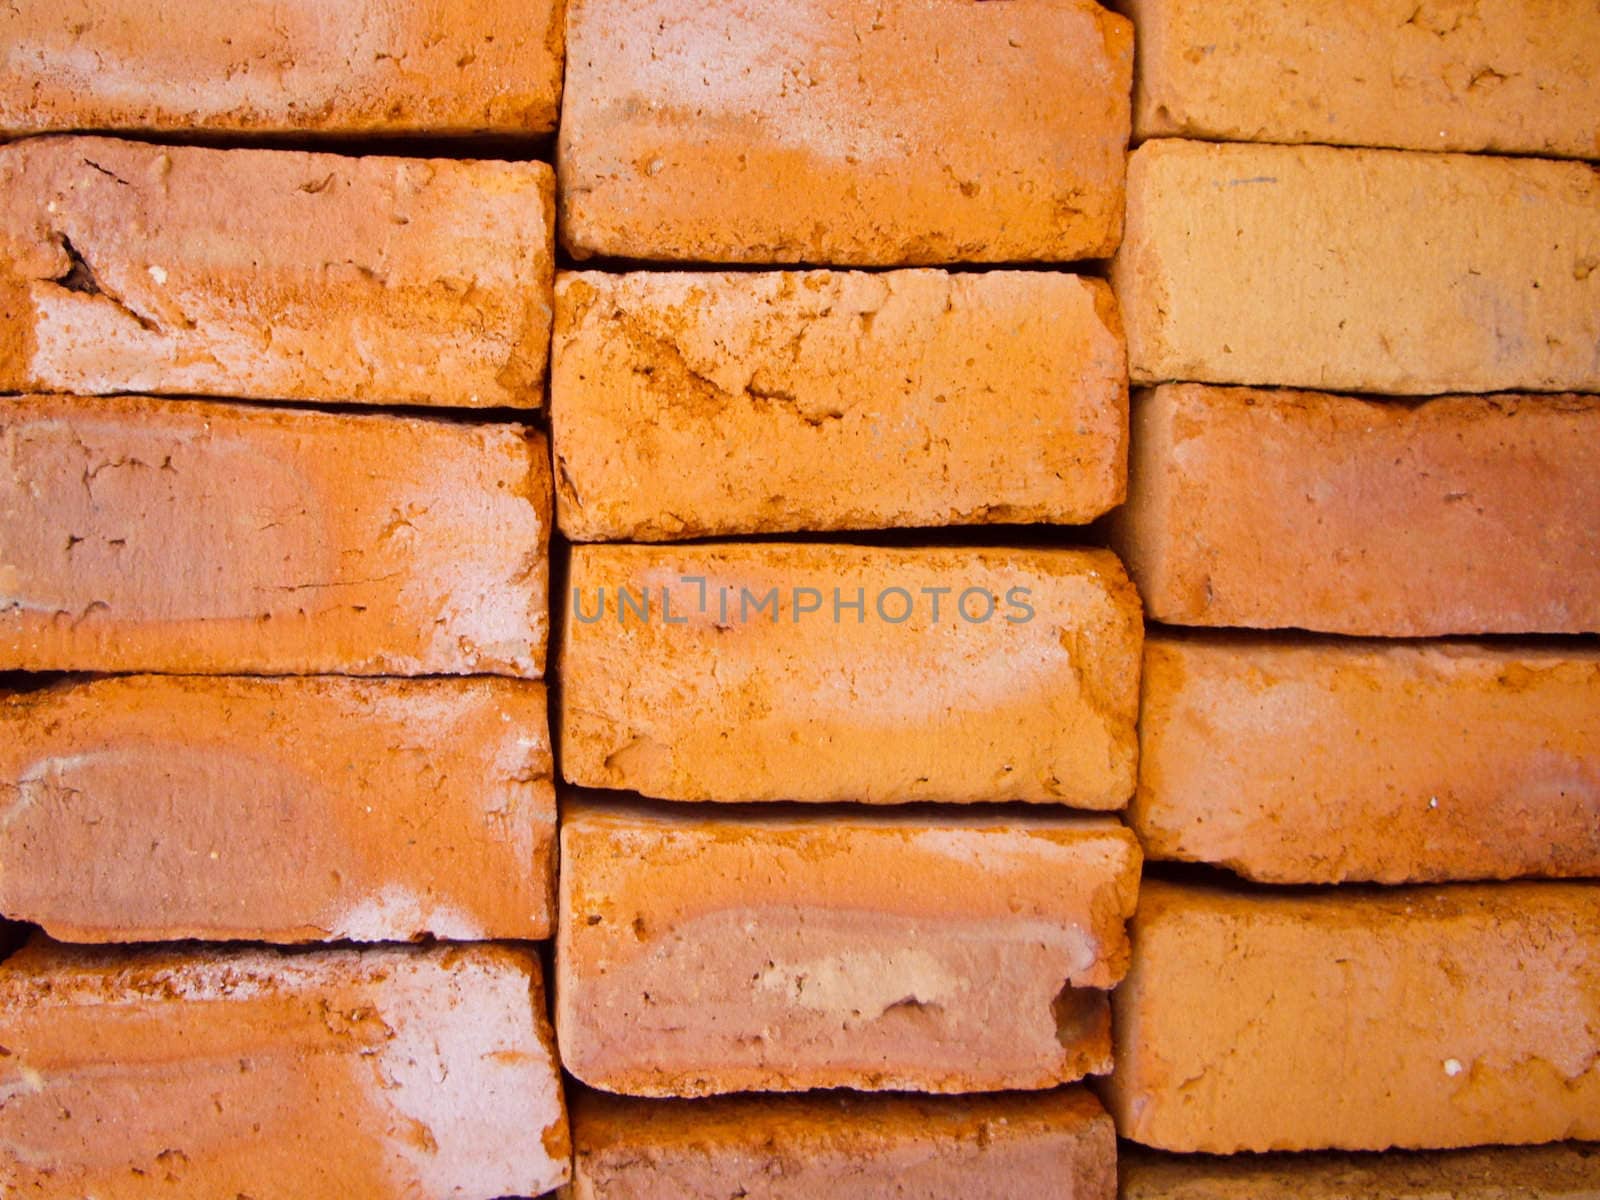 Brick detail by emattil